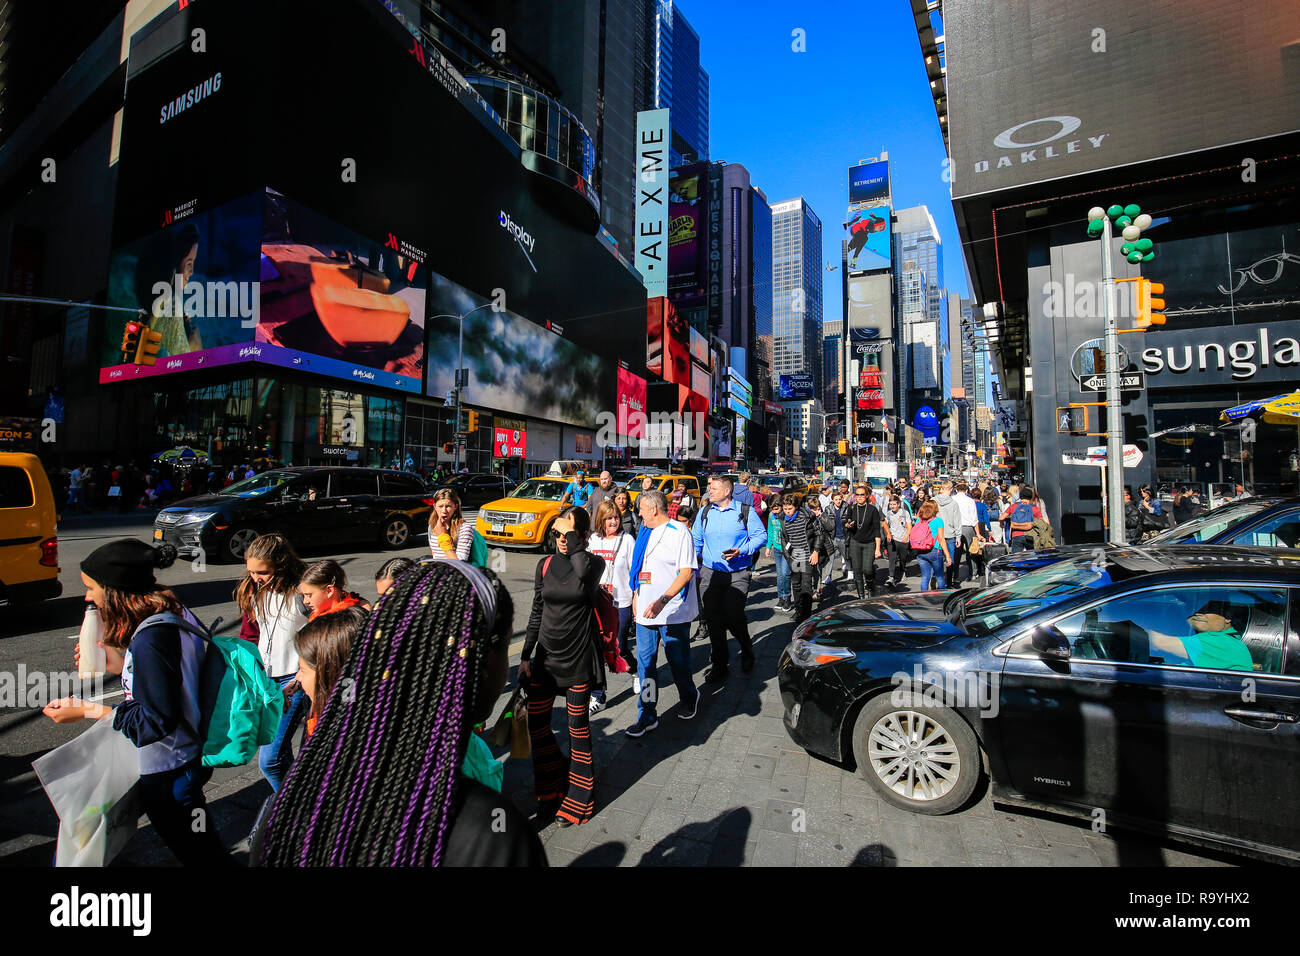 21.02.2018, New York City, New York, Vereinigte Staaten von Amerika - Menschenmenge auf dem Times Square Ecke Broadway, Manhattan, New York City, New  Stock Photo